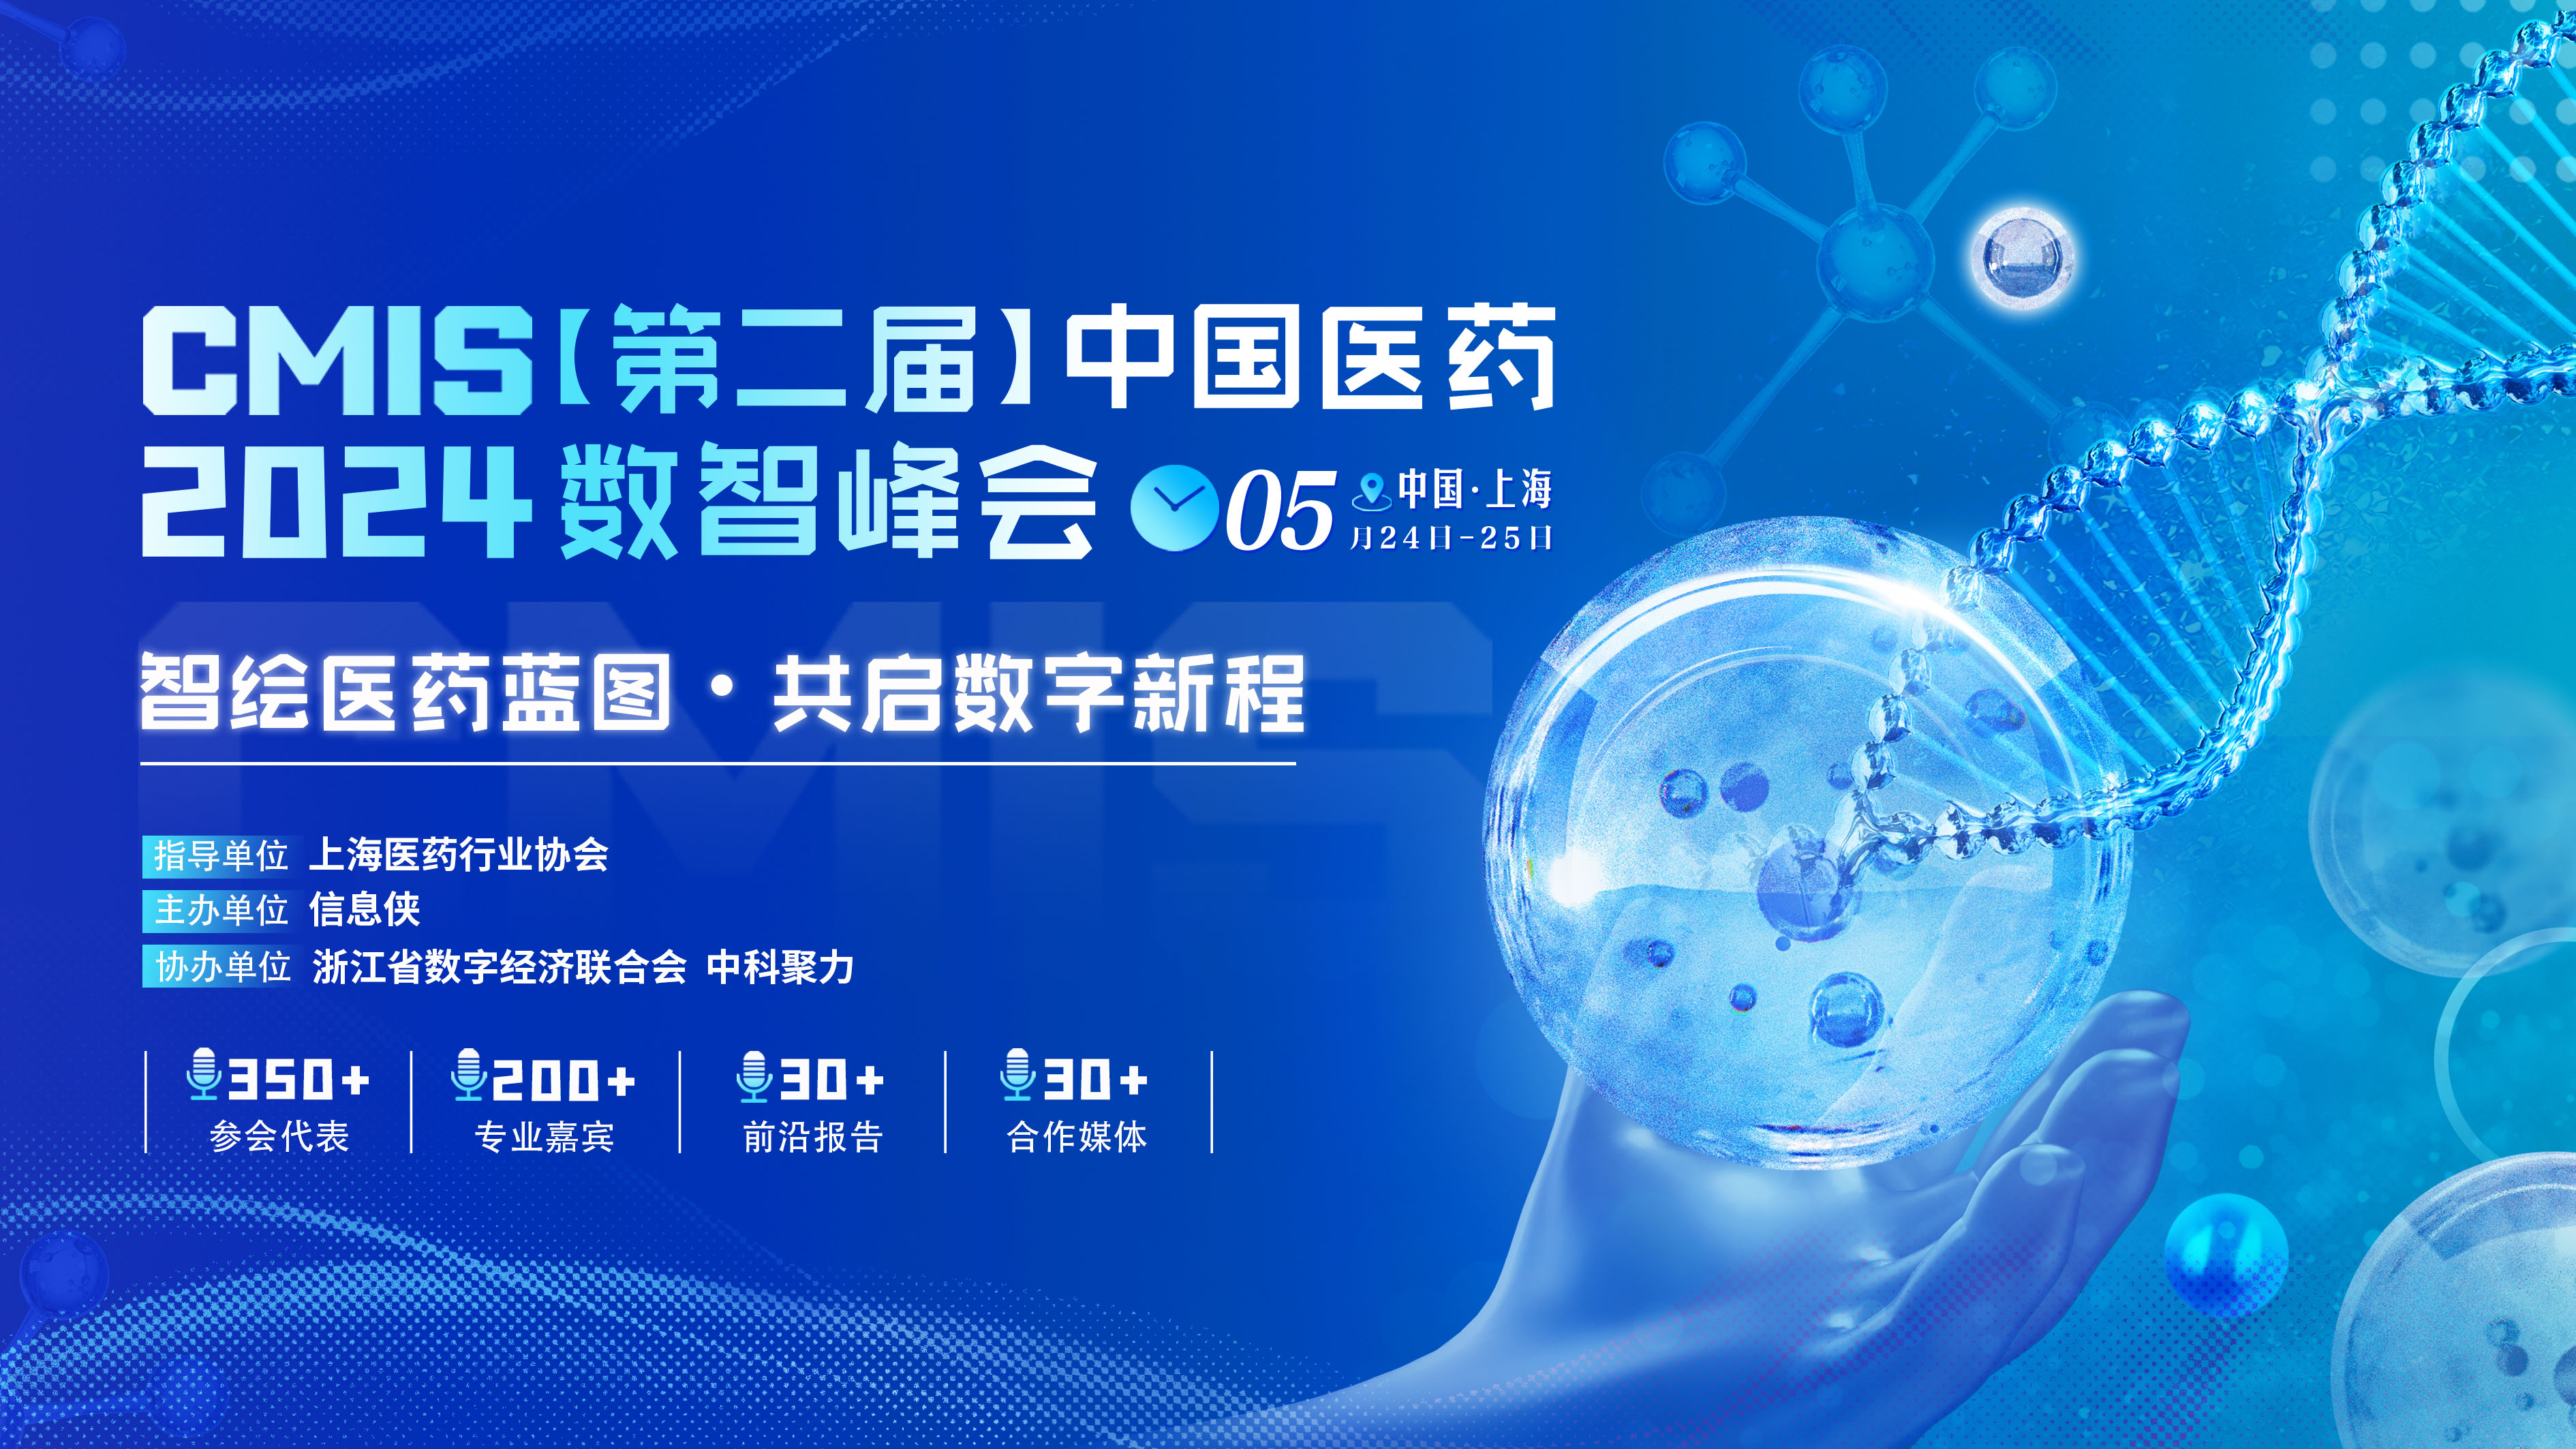 CMIS 2024中国医药数智峰会